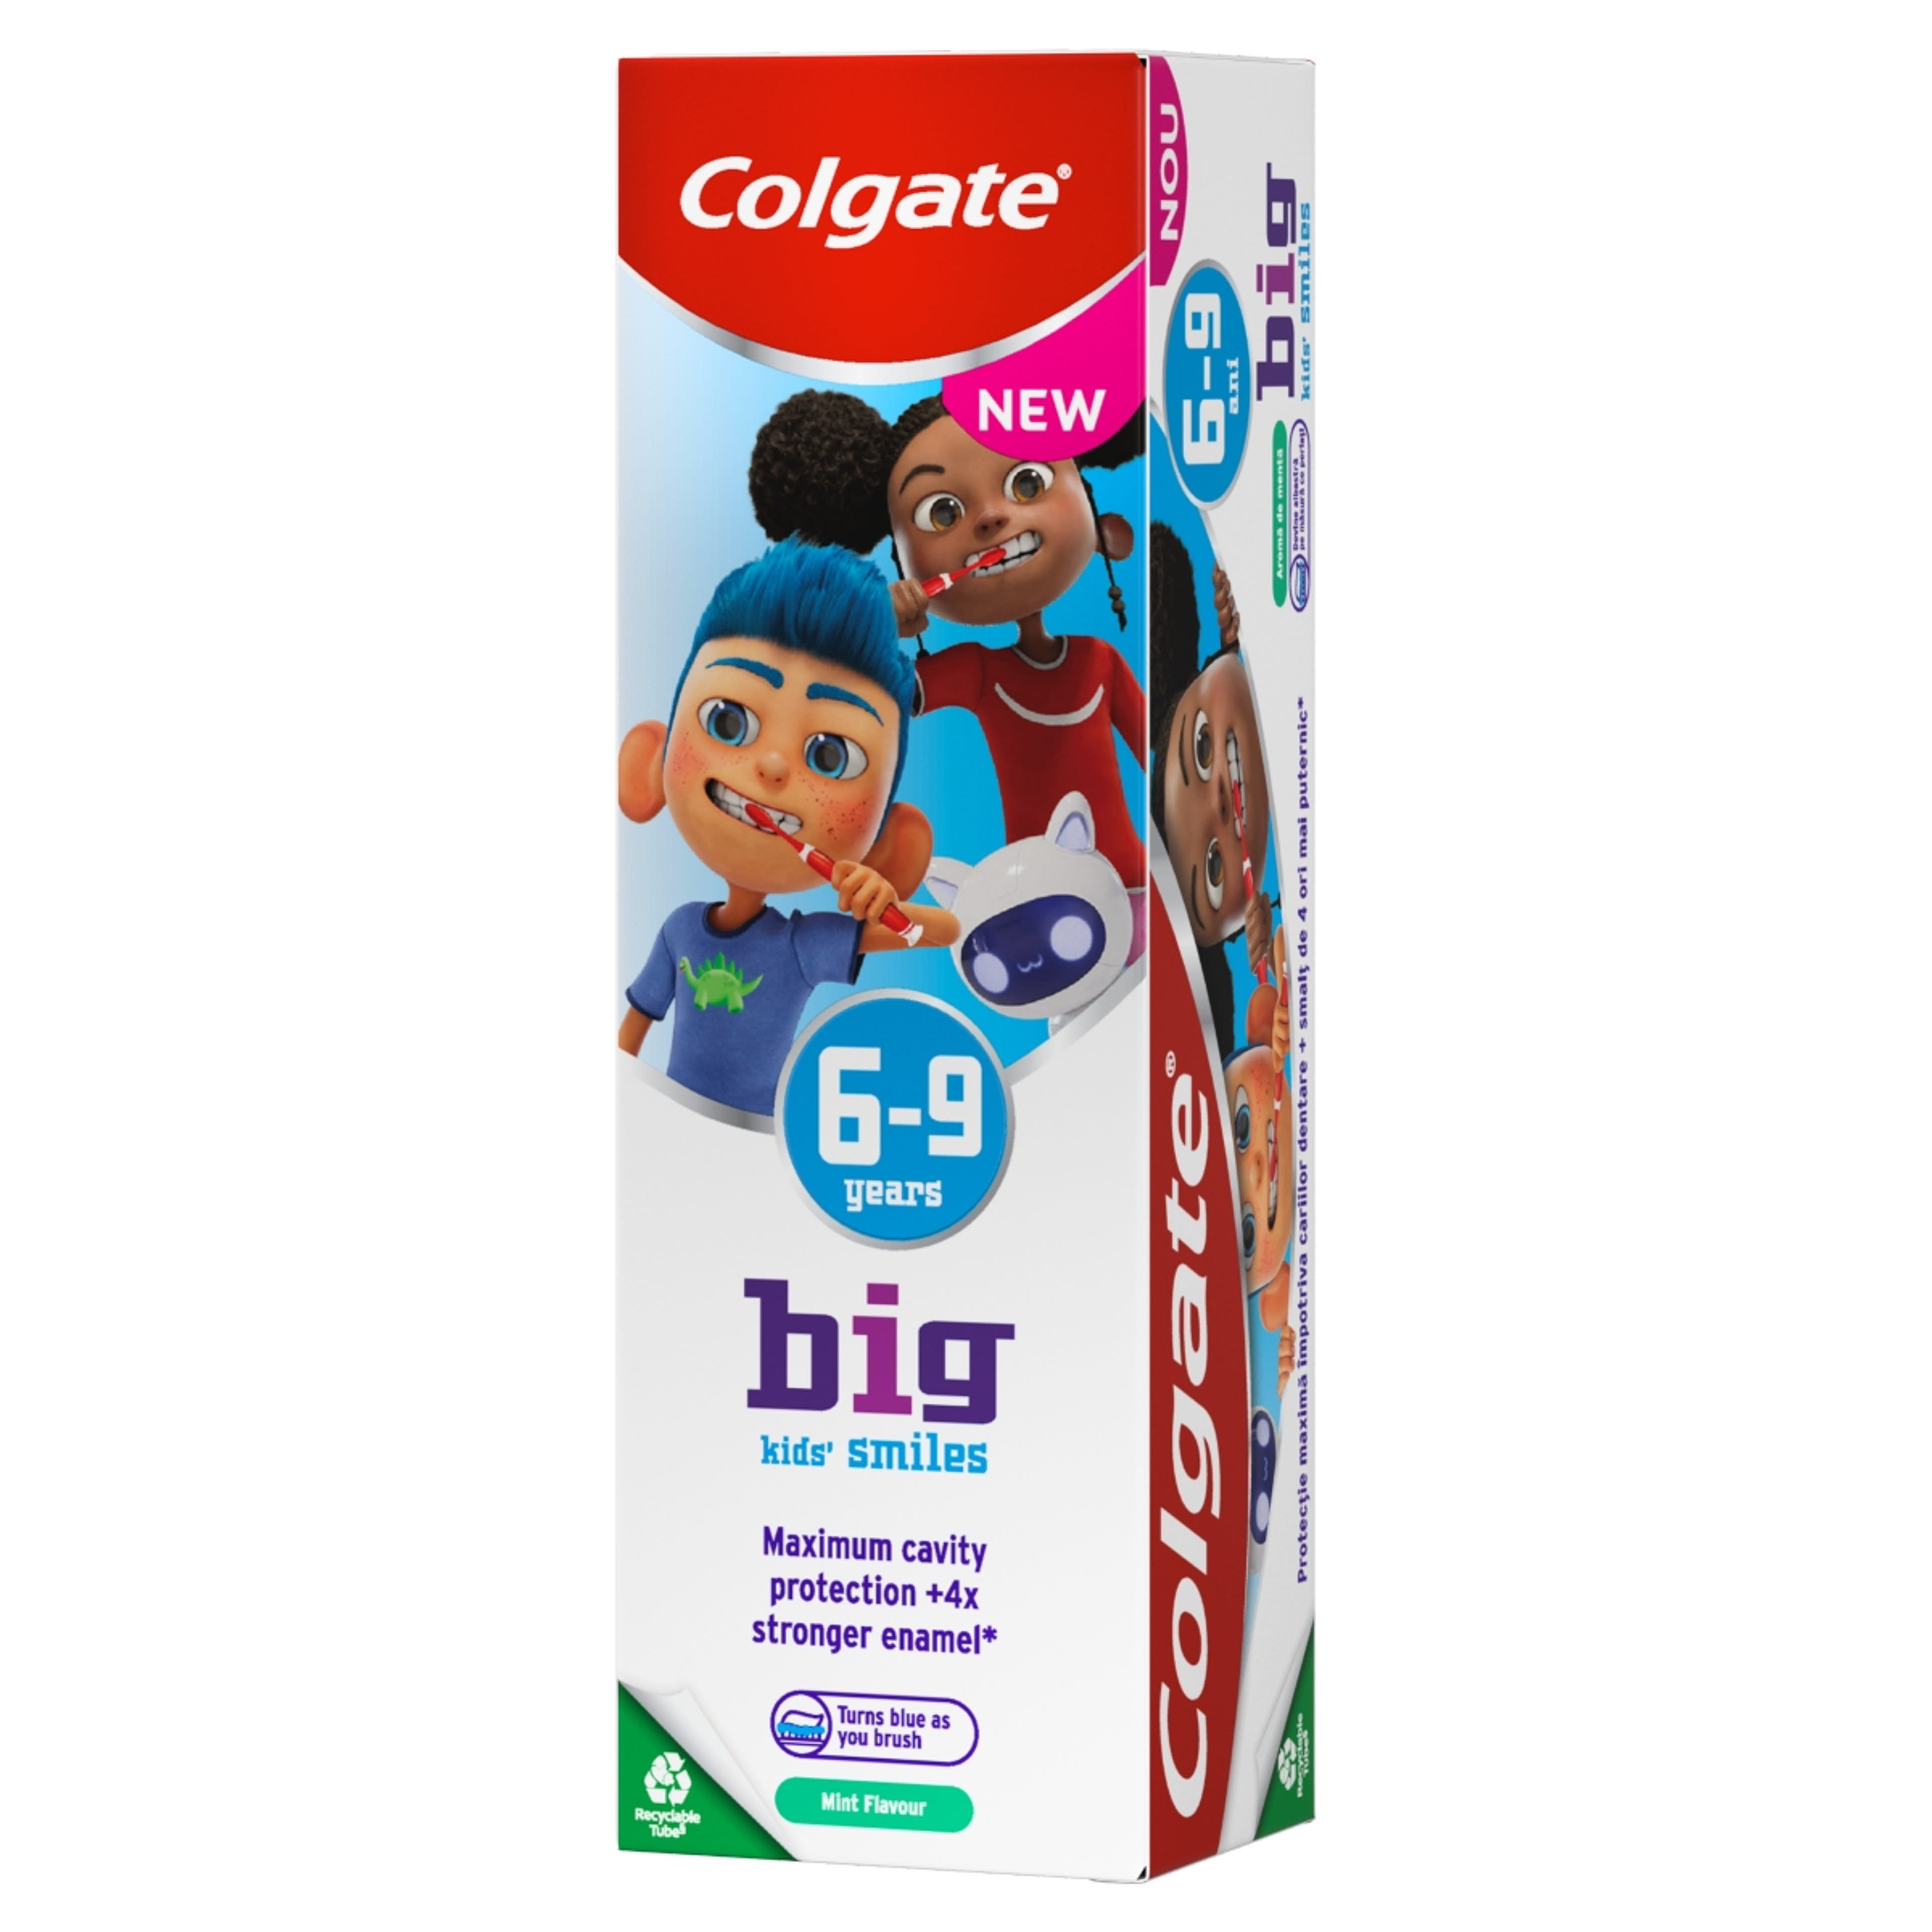 Colgate Kids Smiles fogkrém 6-9 éves gyerekek részére - 50 ml-1